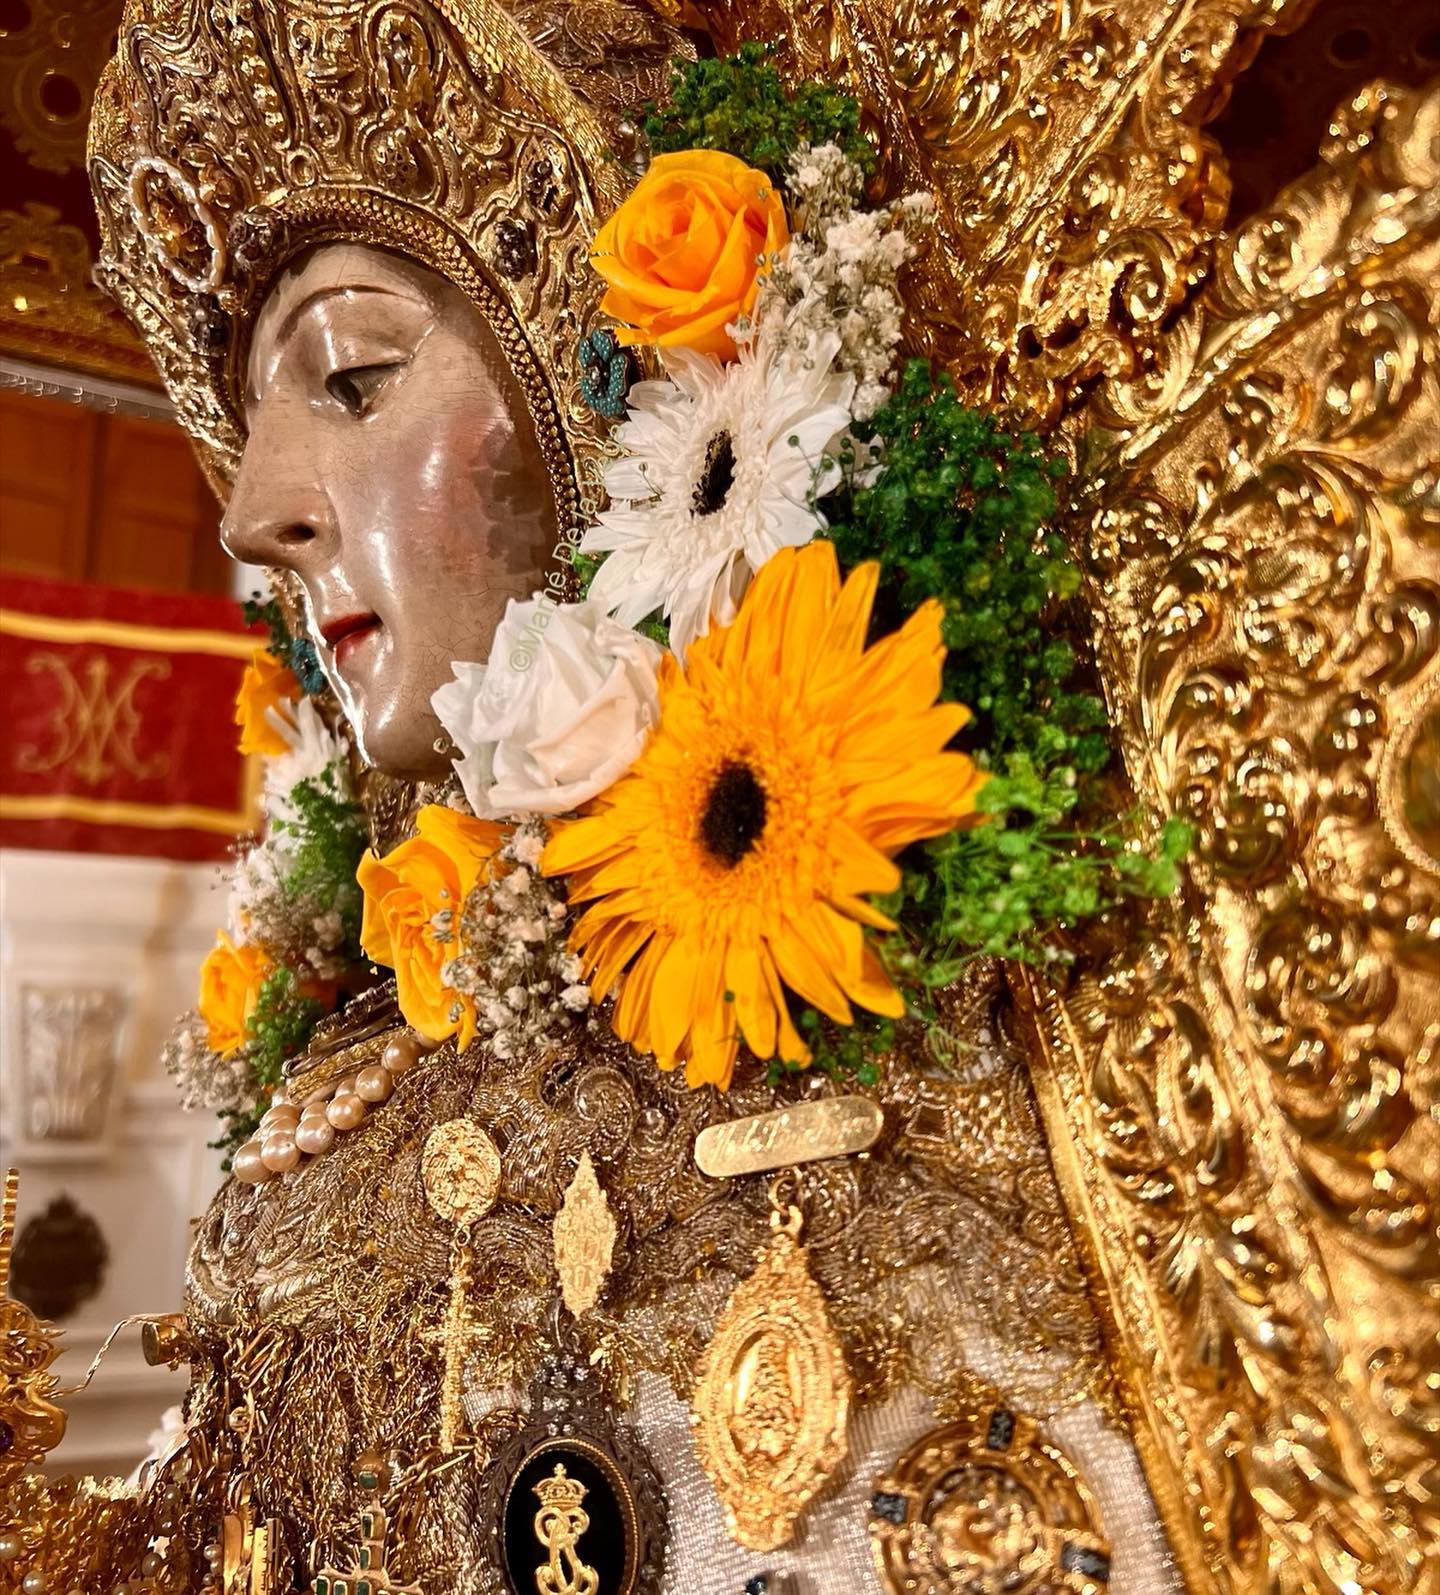 La Virgen del Rocío, entronizada de nuevo en la peana de su camarín